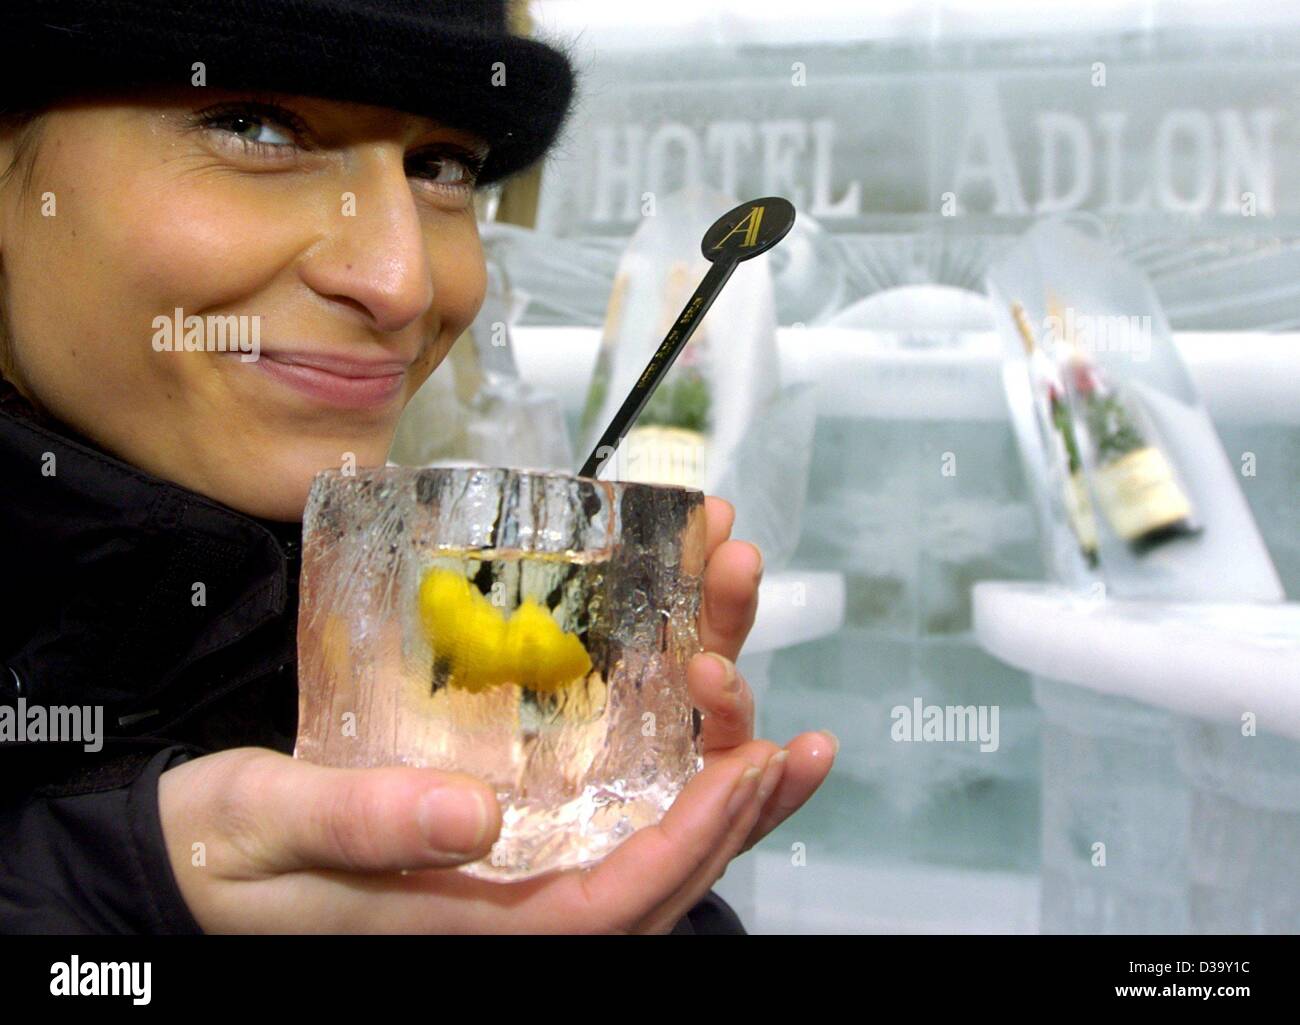 (Dpa) - 22-anno-vecchio Steffi tiene un bicchiere realizzato da ghiaccio in mano e sorrisi come essa si erge presso il bar di ghiaccio dell'Adlon Hotel in Berlino, 30 dicembre 2003. La barra è lunga 27 metri ed è interamente fatta di ghiaccio. Anche le bevande e cocktail sono serviti in bicchieri realizzati dal ghiaccio. Il bar era recentem Foto Stock